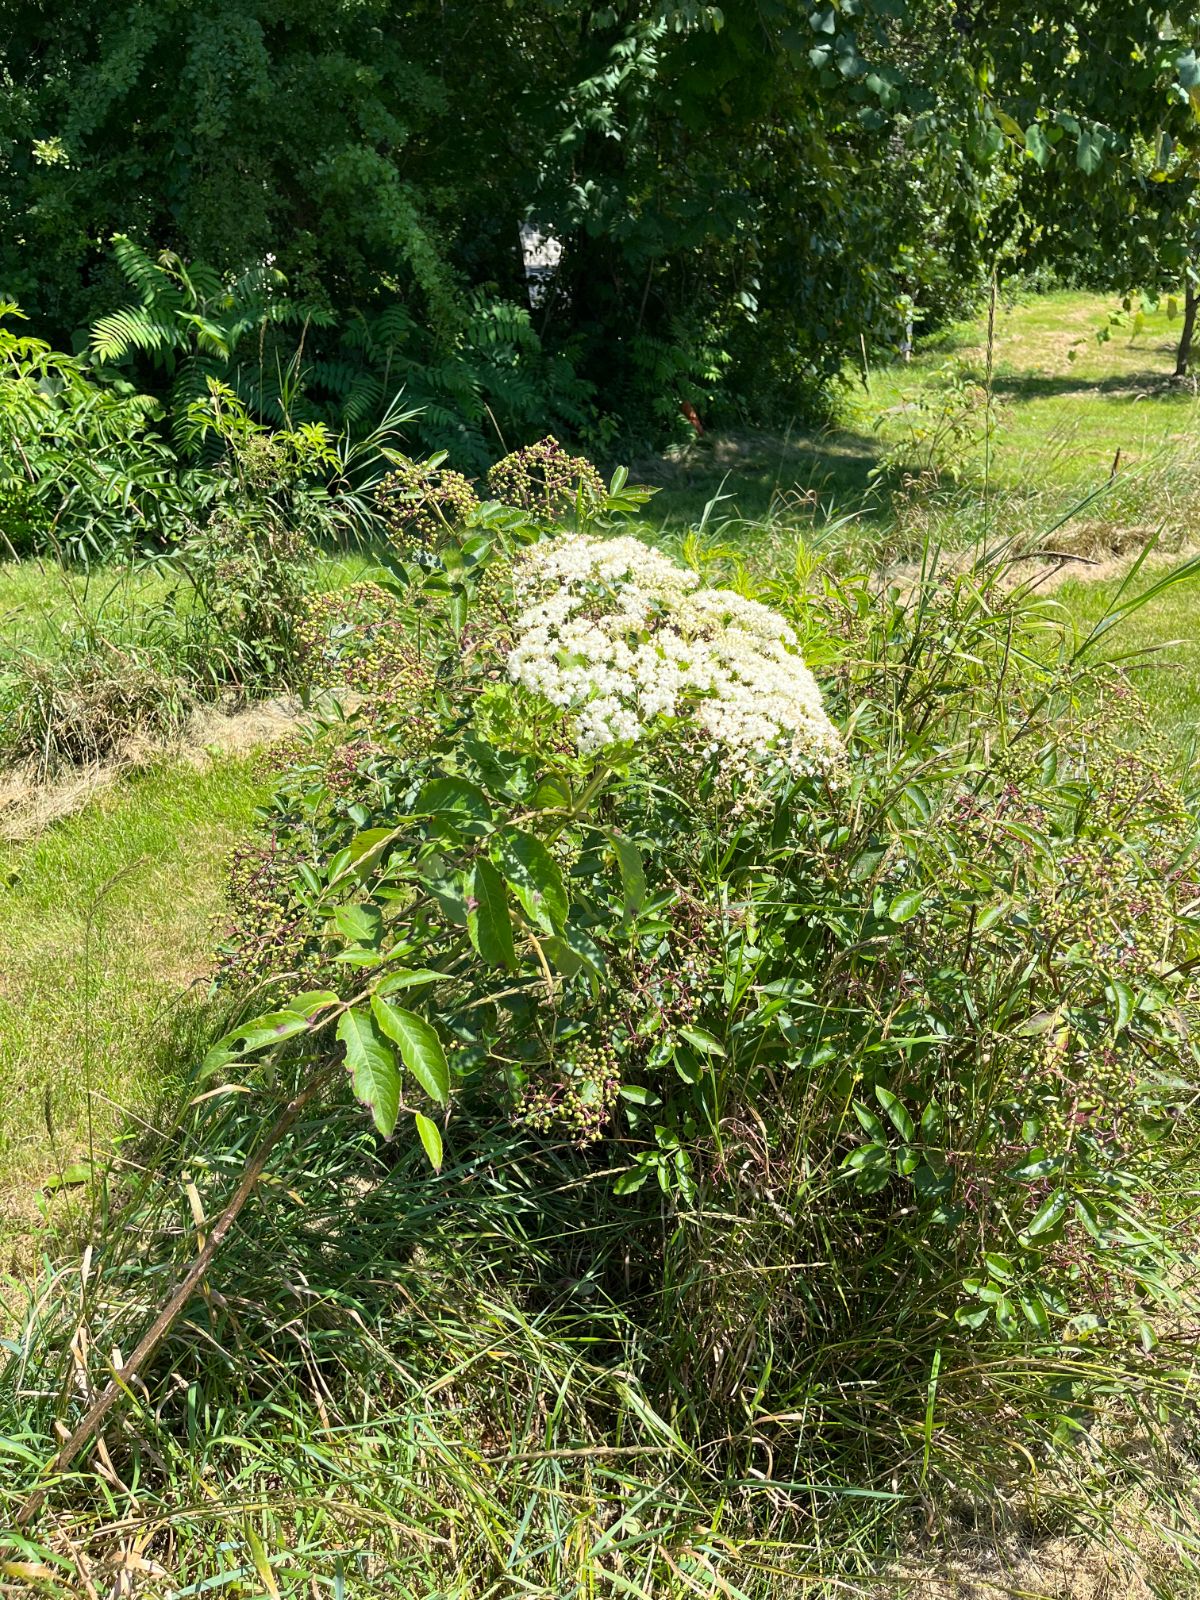 An elderberry bush in bloom